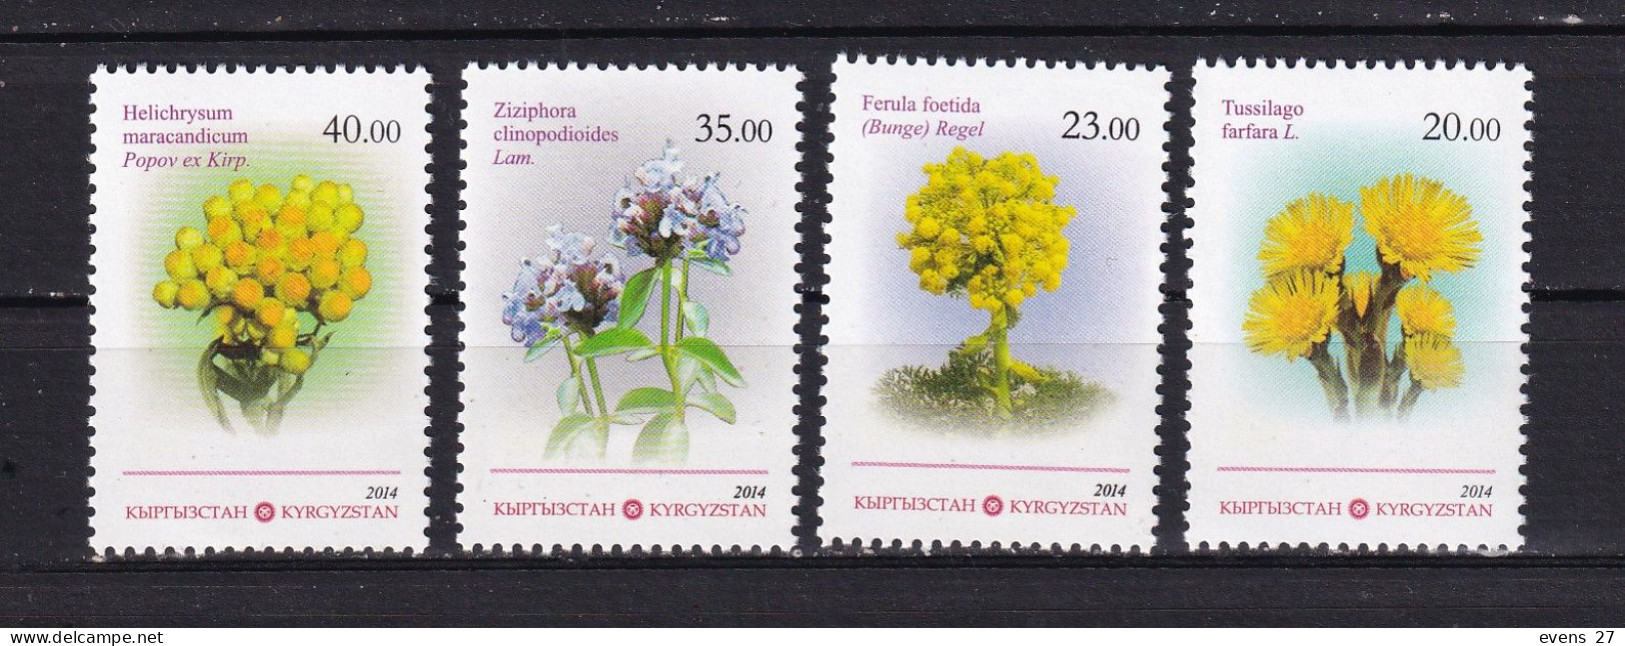 KYRGYZSTAN-2014- MEDICINAL PLANTS-MNH - Piante Medicinali